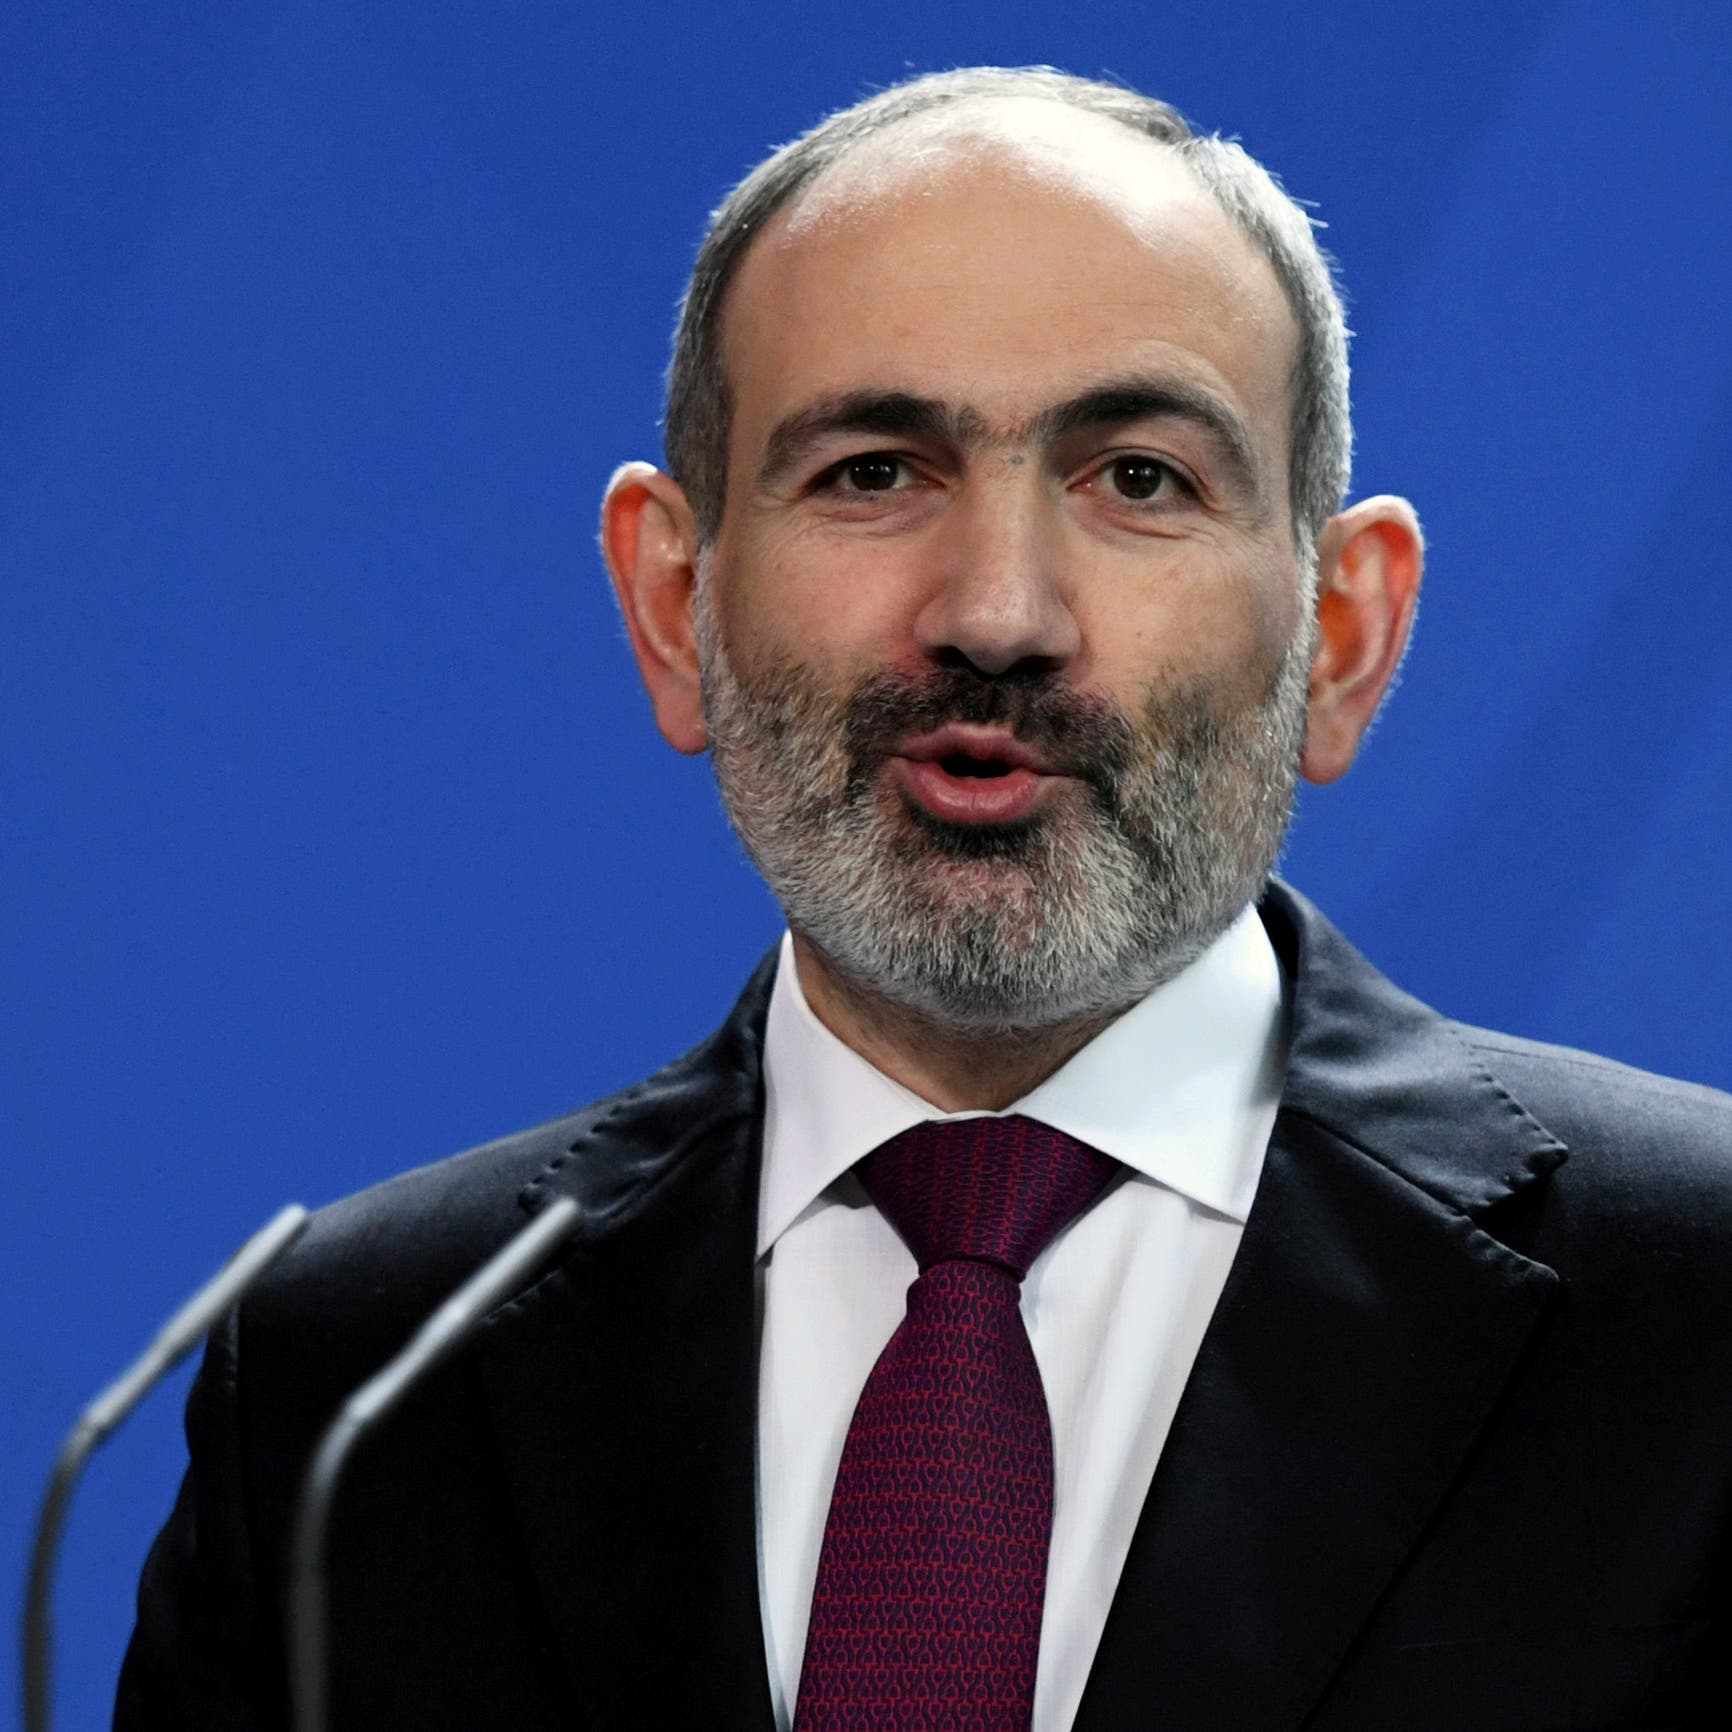 رئيس وزراء أرمينيا: تركيا تحرض أذربيجان على مواصلة القتال